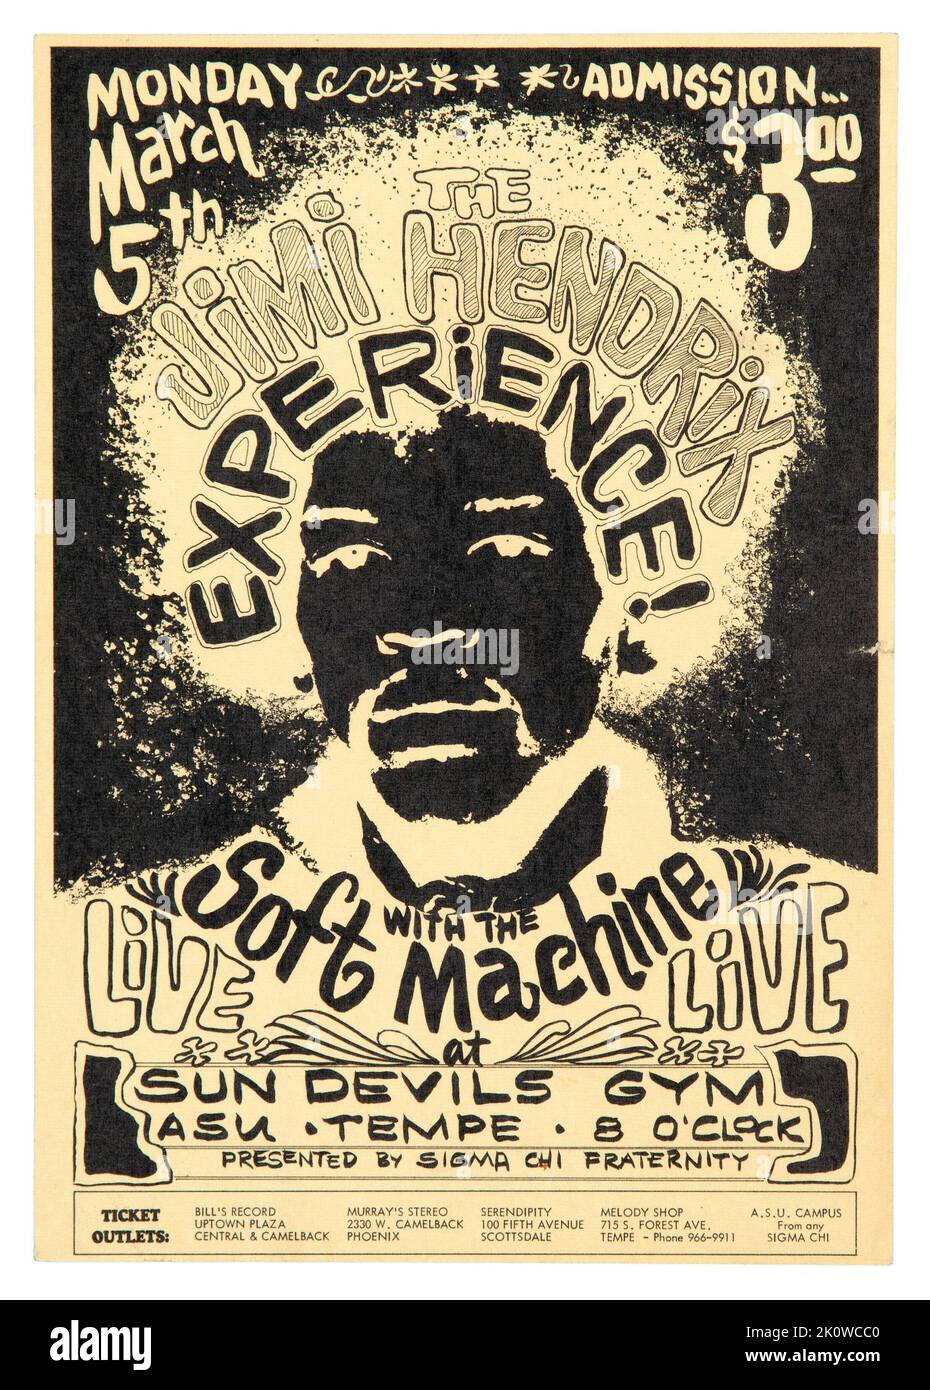 Jimi Hendrix Experience 1968 Tempe, Arizona Concert Handbill. Un volantino pubblicitario per concerti per Jimi Hendrix e i Soft Machine che si esibiscono all'Arizona State University all'inizio del 1968. Foto Stock